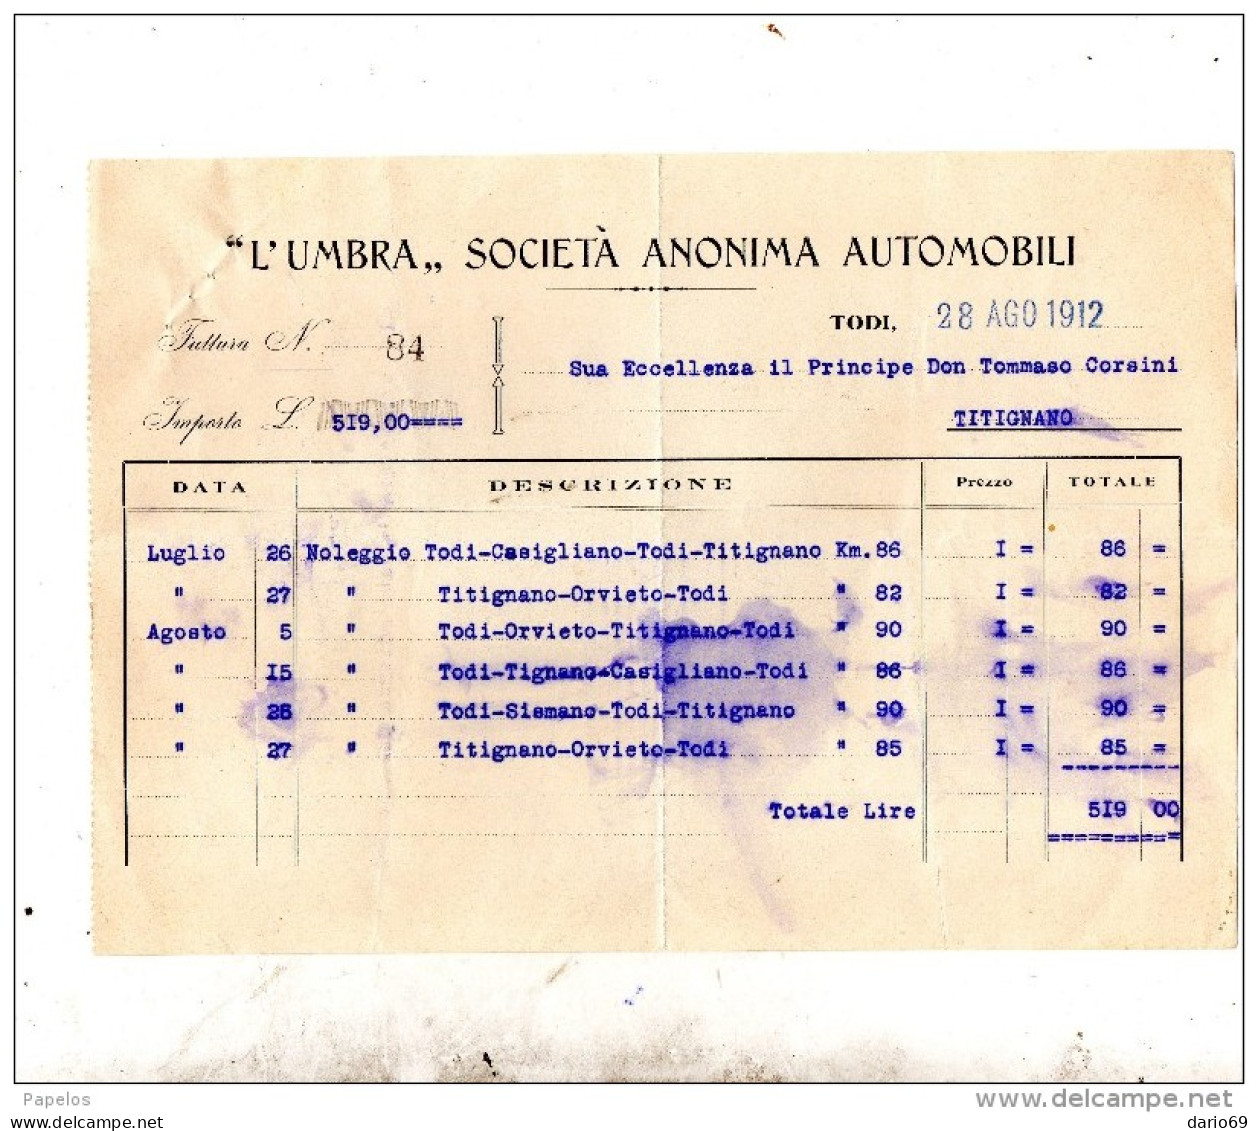 1912 TODI - SOCIETÀ ANONIMA AUTOMOBILI - Italie